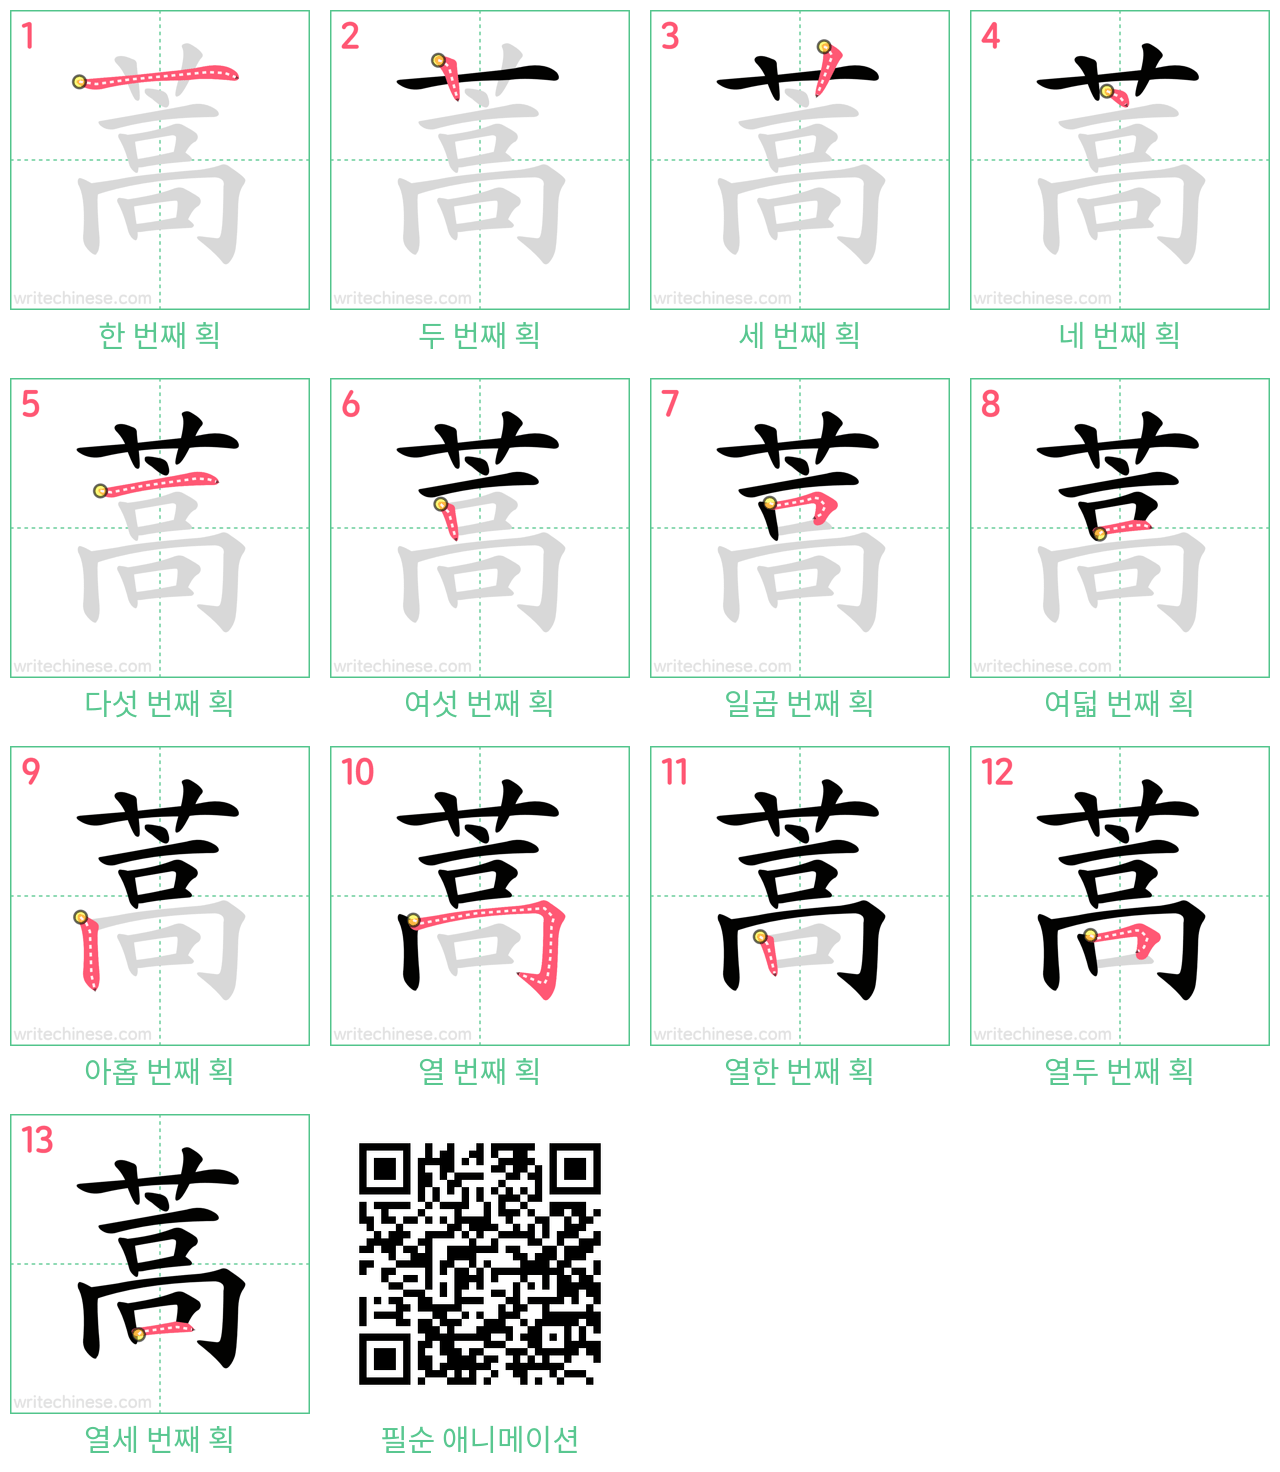 蒿 step-by-step stroke order diagrams